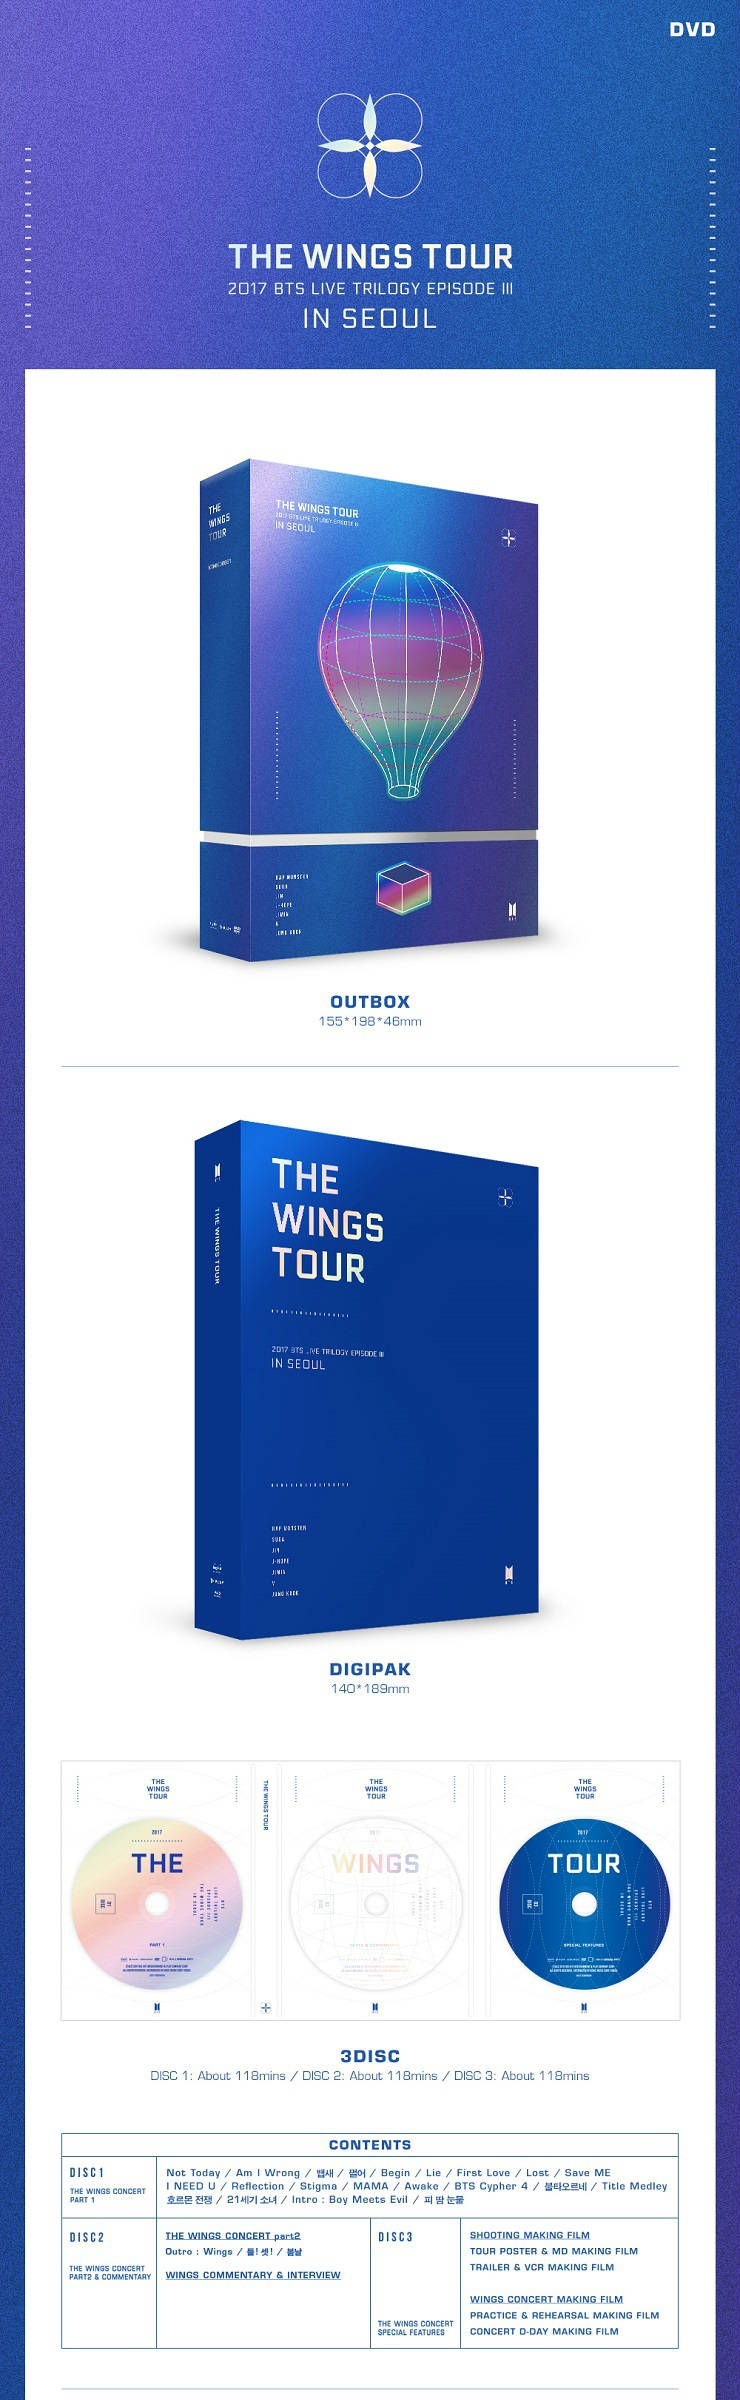 BTS THE WINGS TOUR DVD ウィングスツアーソウル - K-POP/アジア